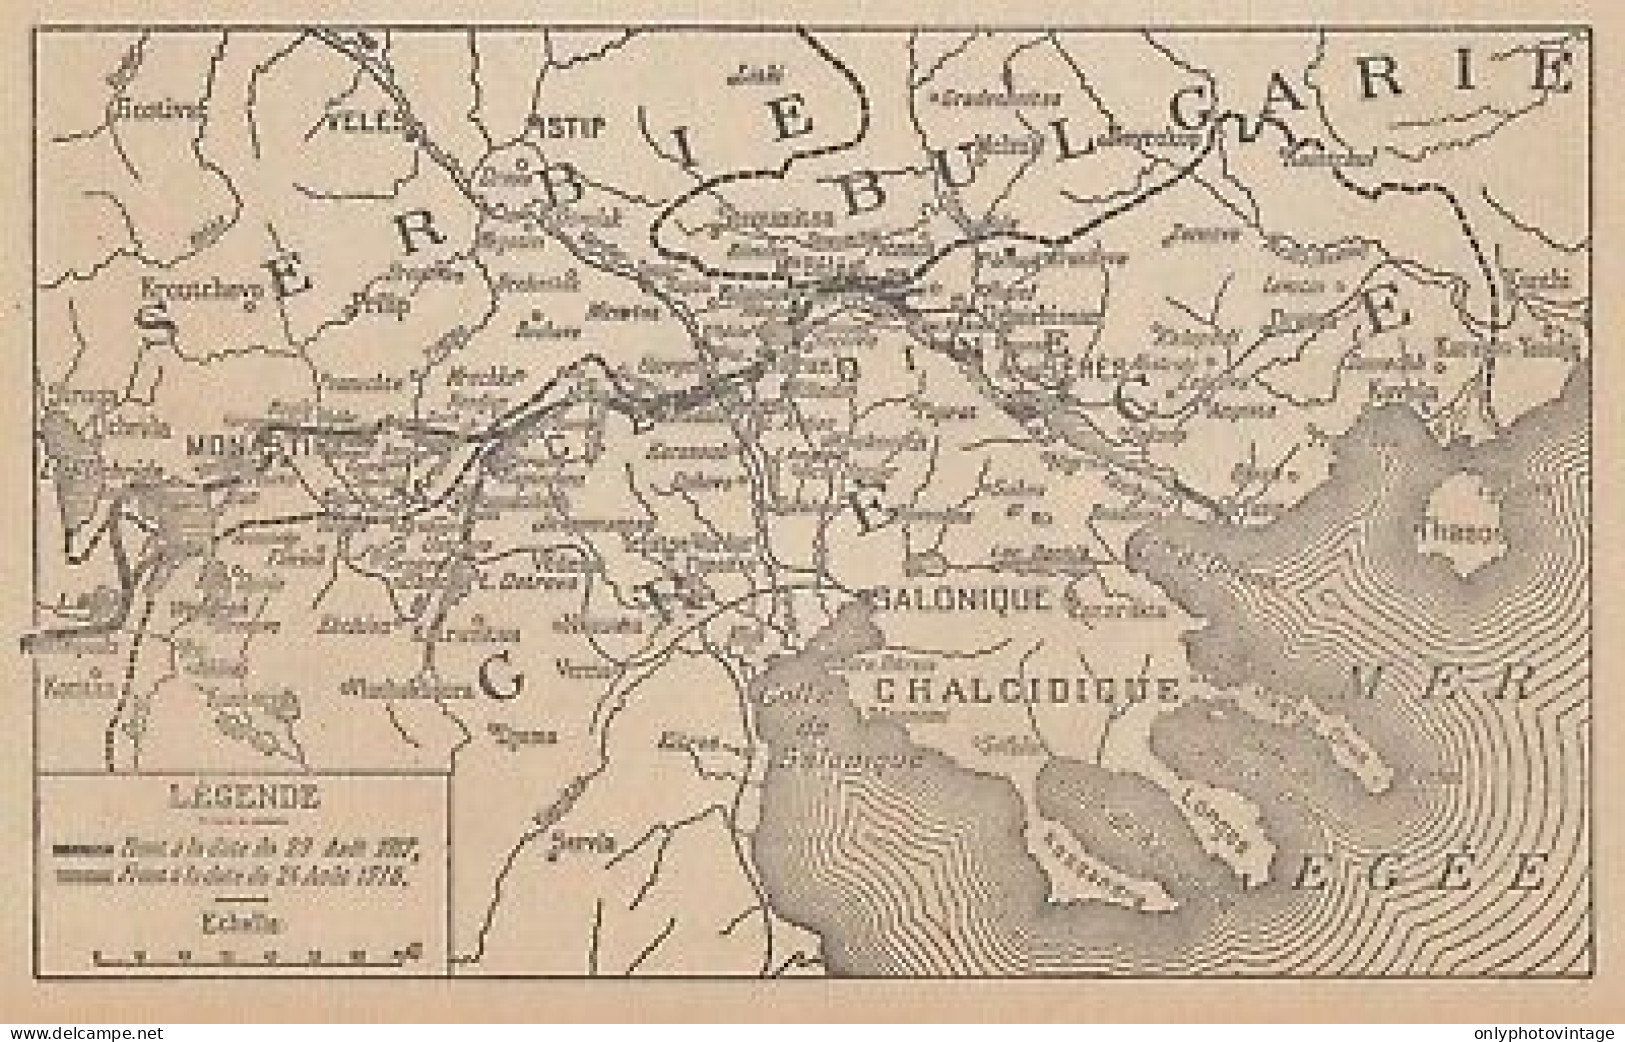 Première Guerre Mondiale - Les Opérations En Orient - 1917 Vintage Map - Geographische Kaarten